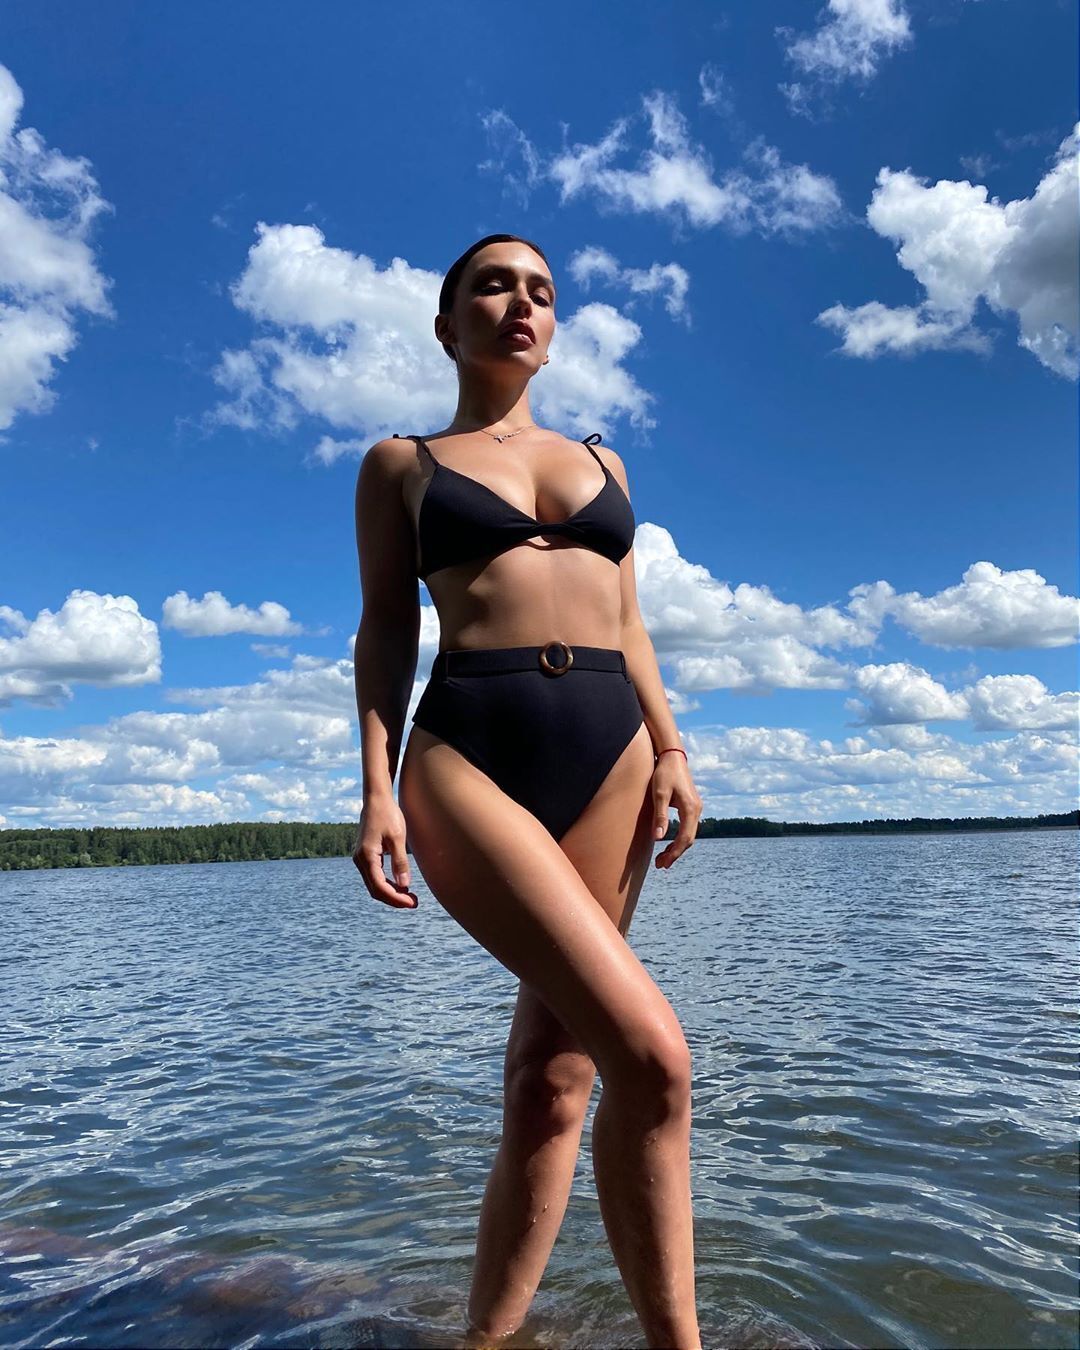 Серябкина показала пышные формы в купальнике (Instagram Ольги Серябкиной)